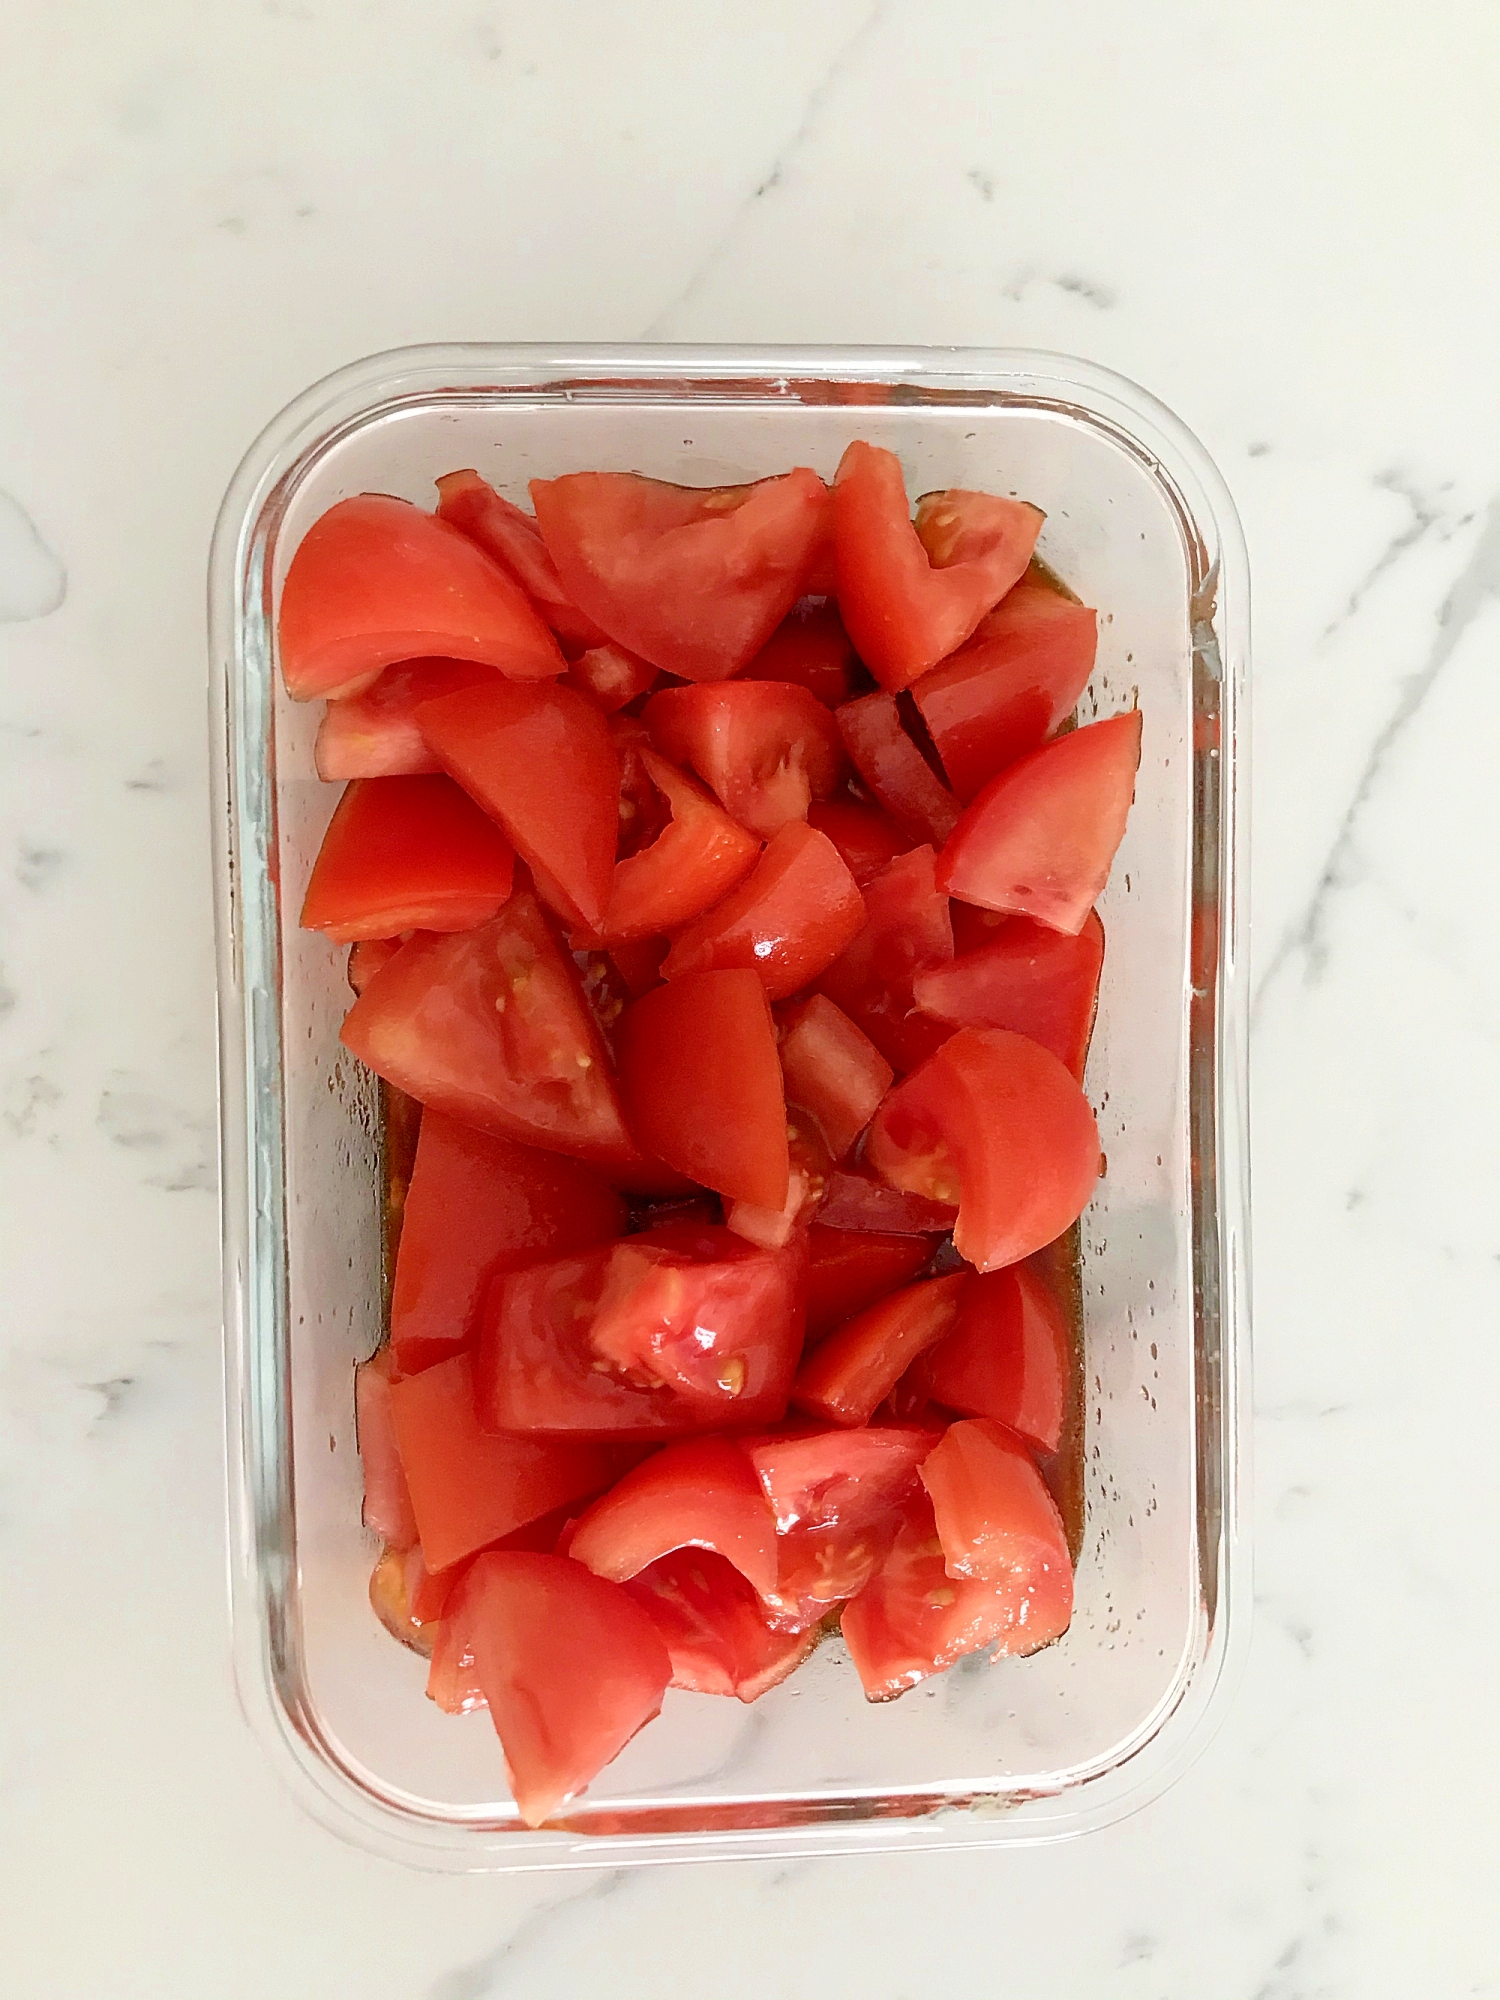 簡単おいしいにんにくトマトのマリネ